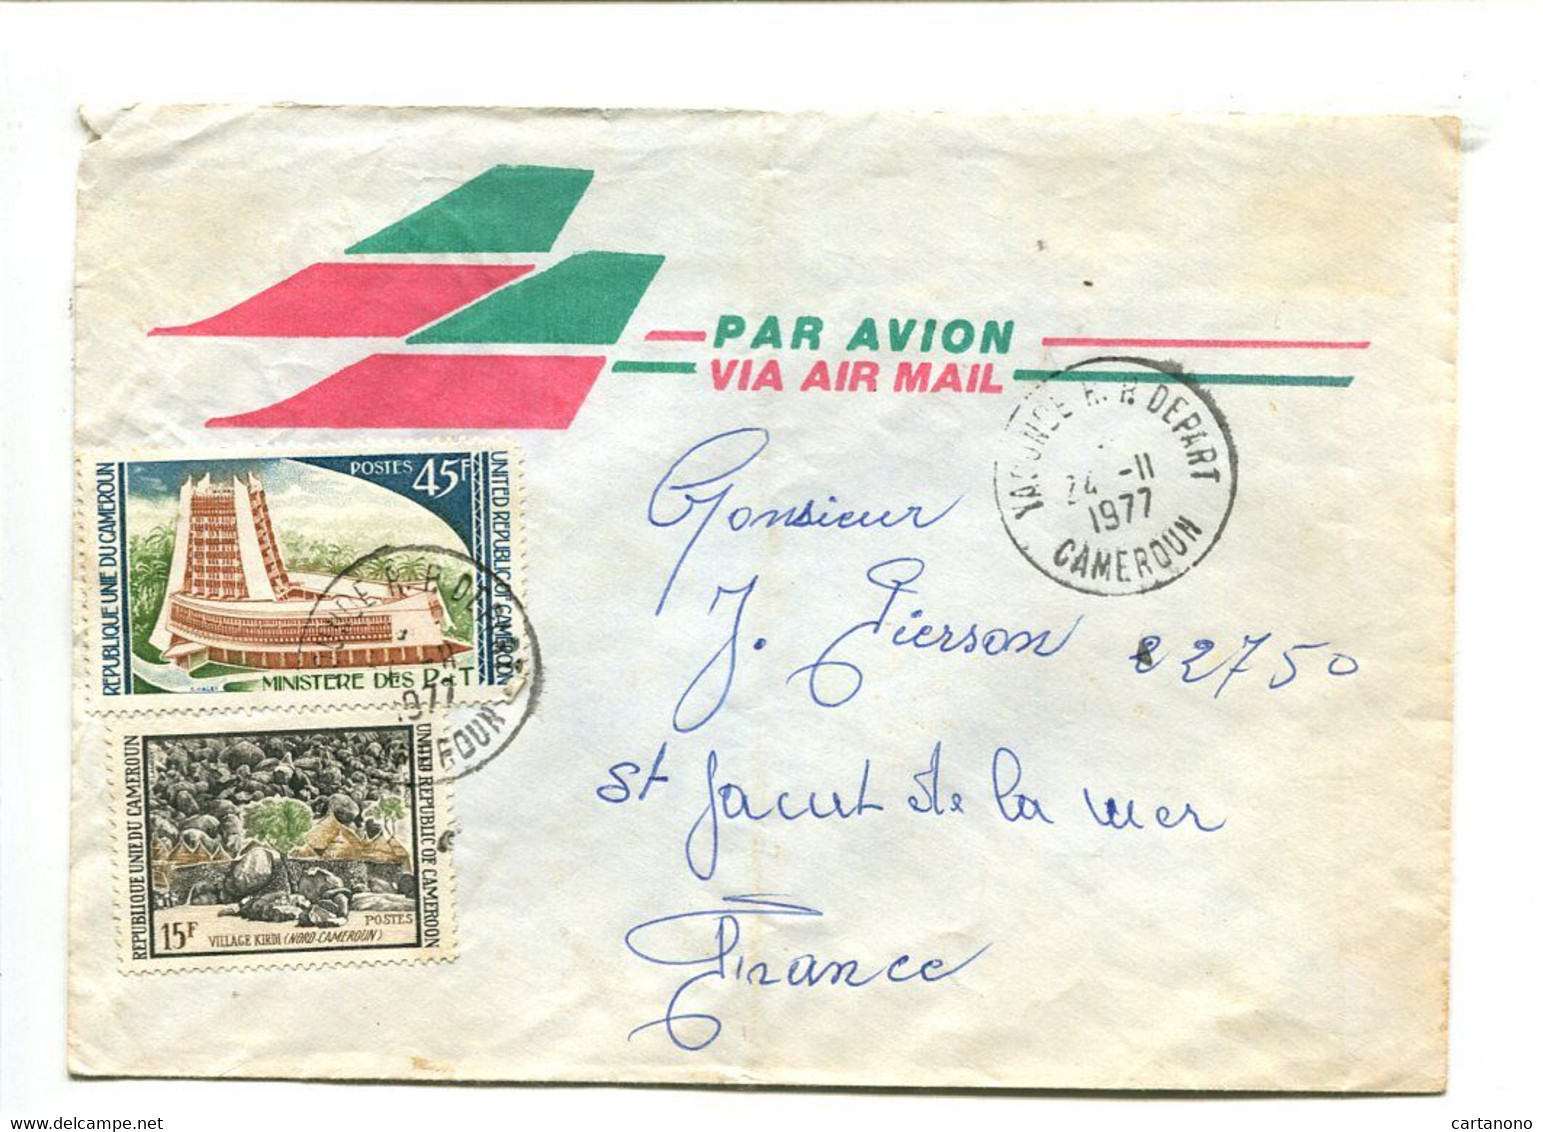 CAMEROUN Yaoude R.P. Départ 1977 - Affranchissement Sur Lettre Par Avion - Kameroen (1960-...)